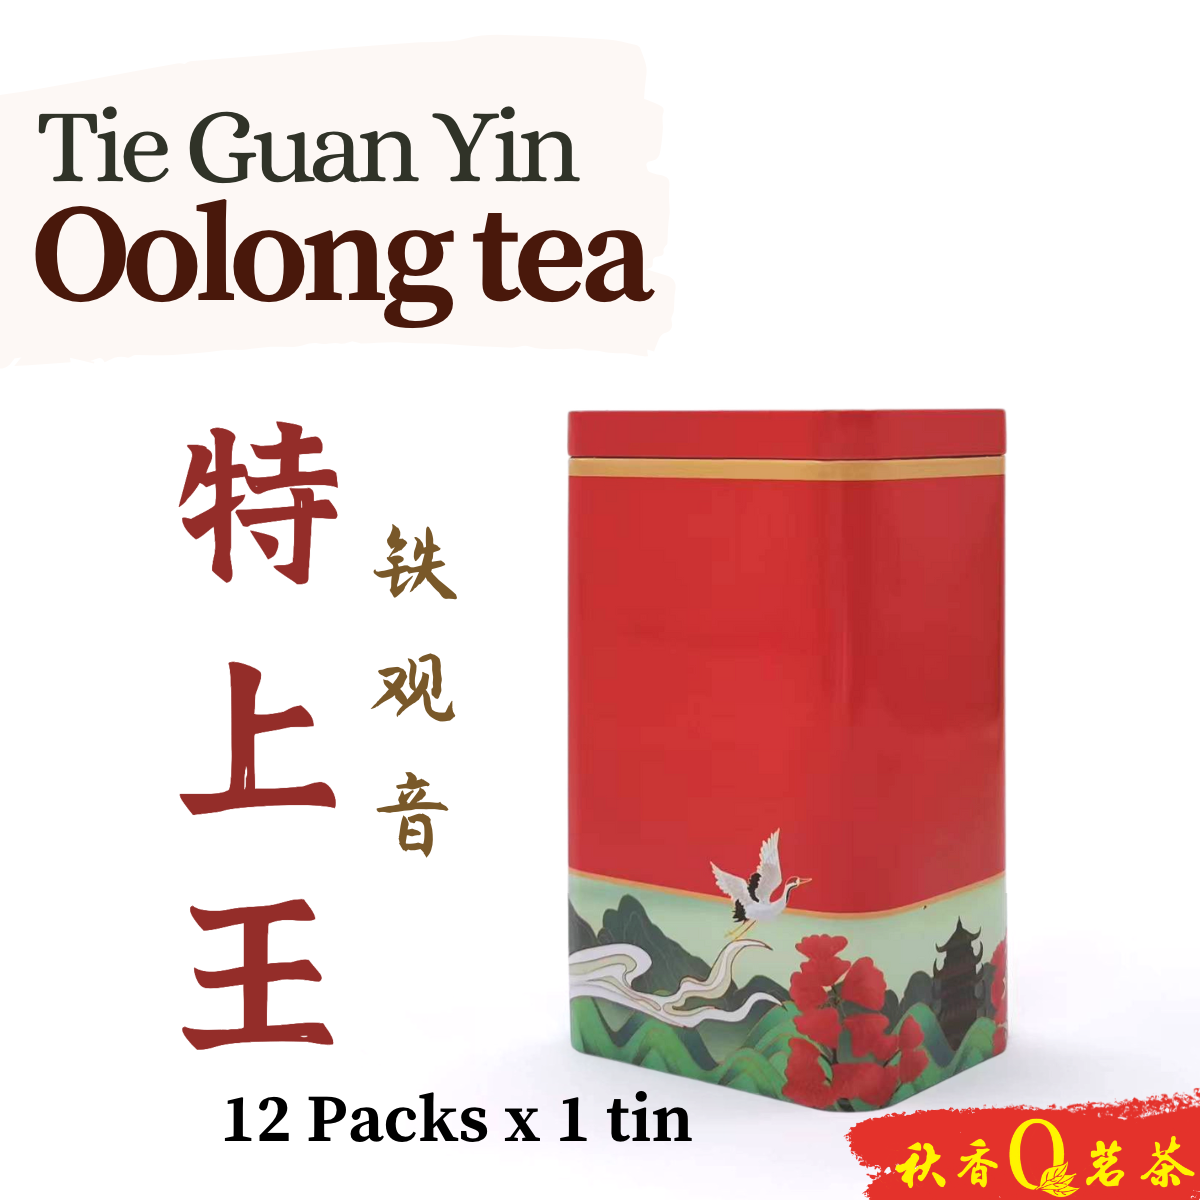 特上王 Te Shang Wang tea (清香 Fresh Fragrance)【12 Packs x 7.5g】|【铁观音 Tie Guan Yin Tea】